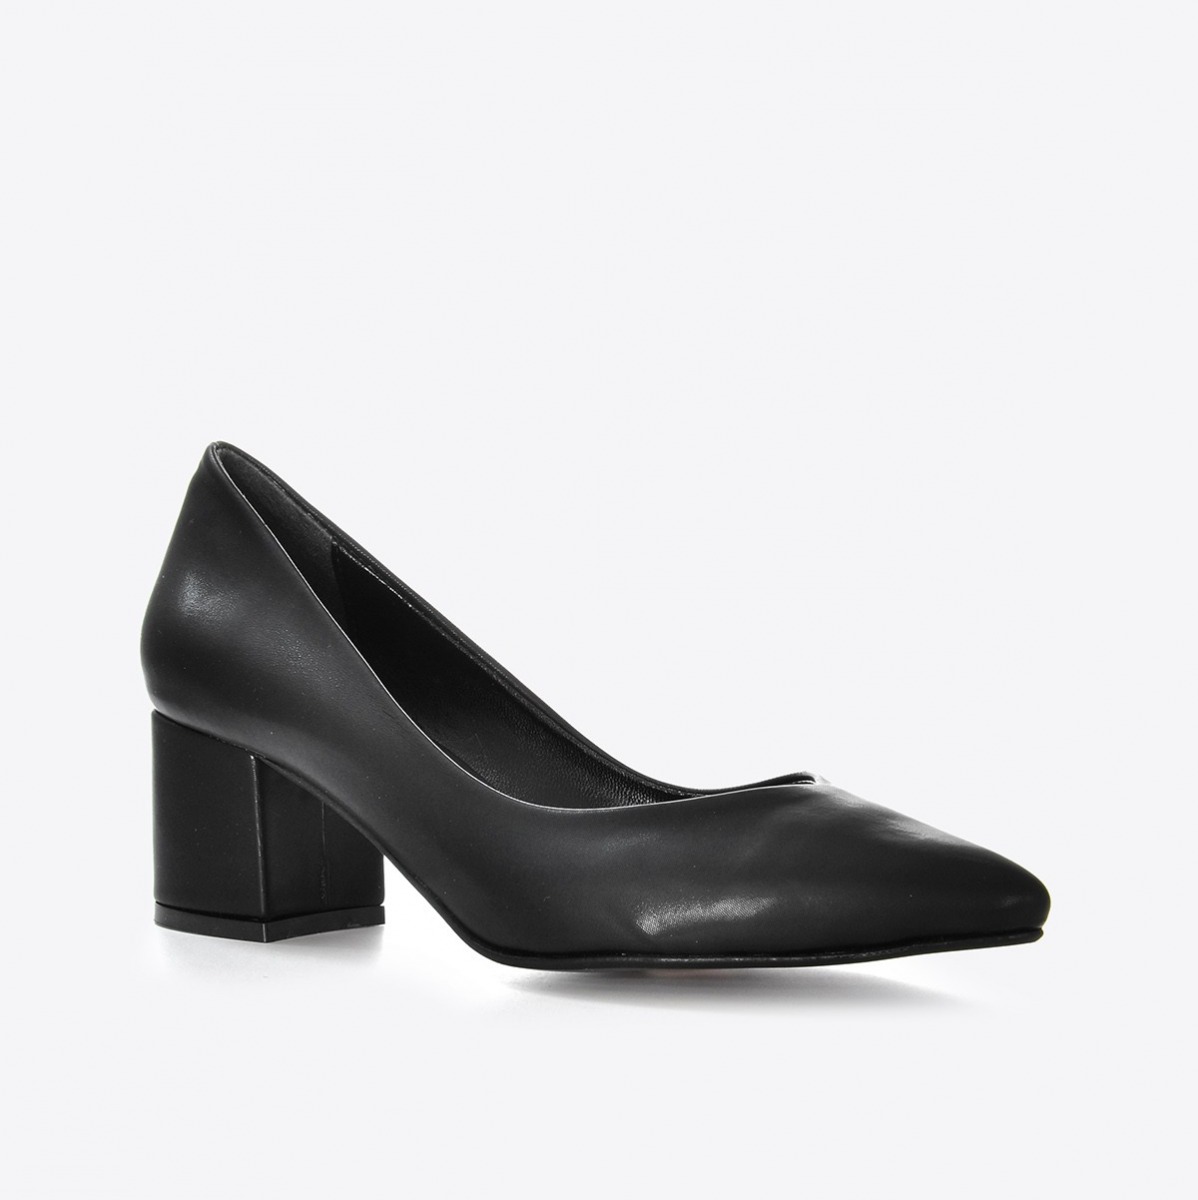 Flo Kadın Siyah Kumaş Klasik Topuklu Ayakkabı VZN21-040Y. 1